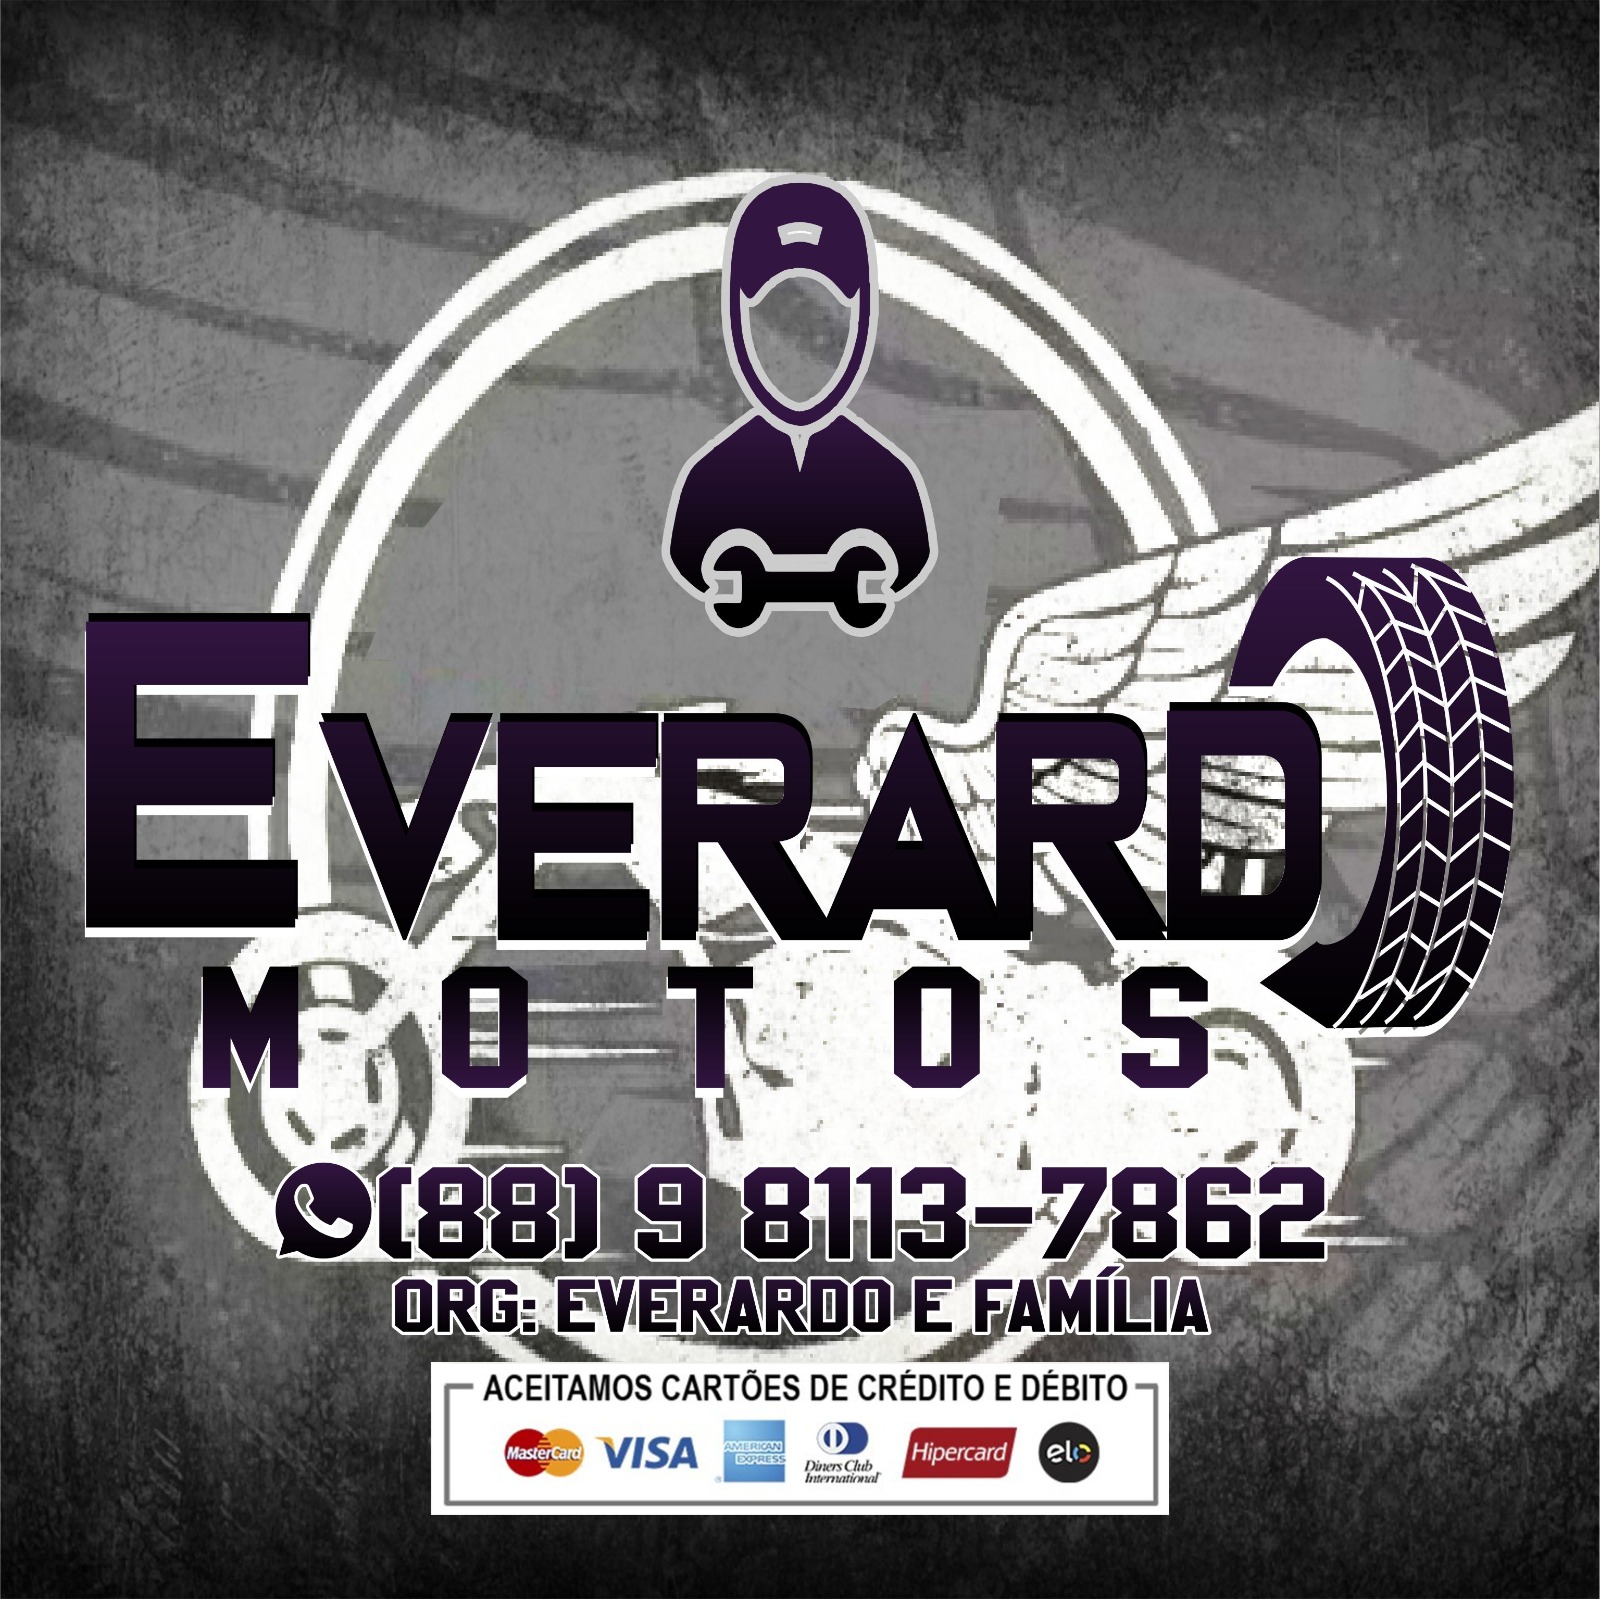 Everardo Motos